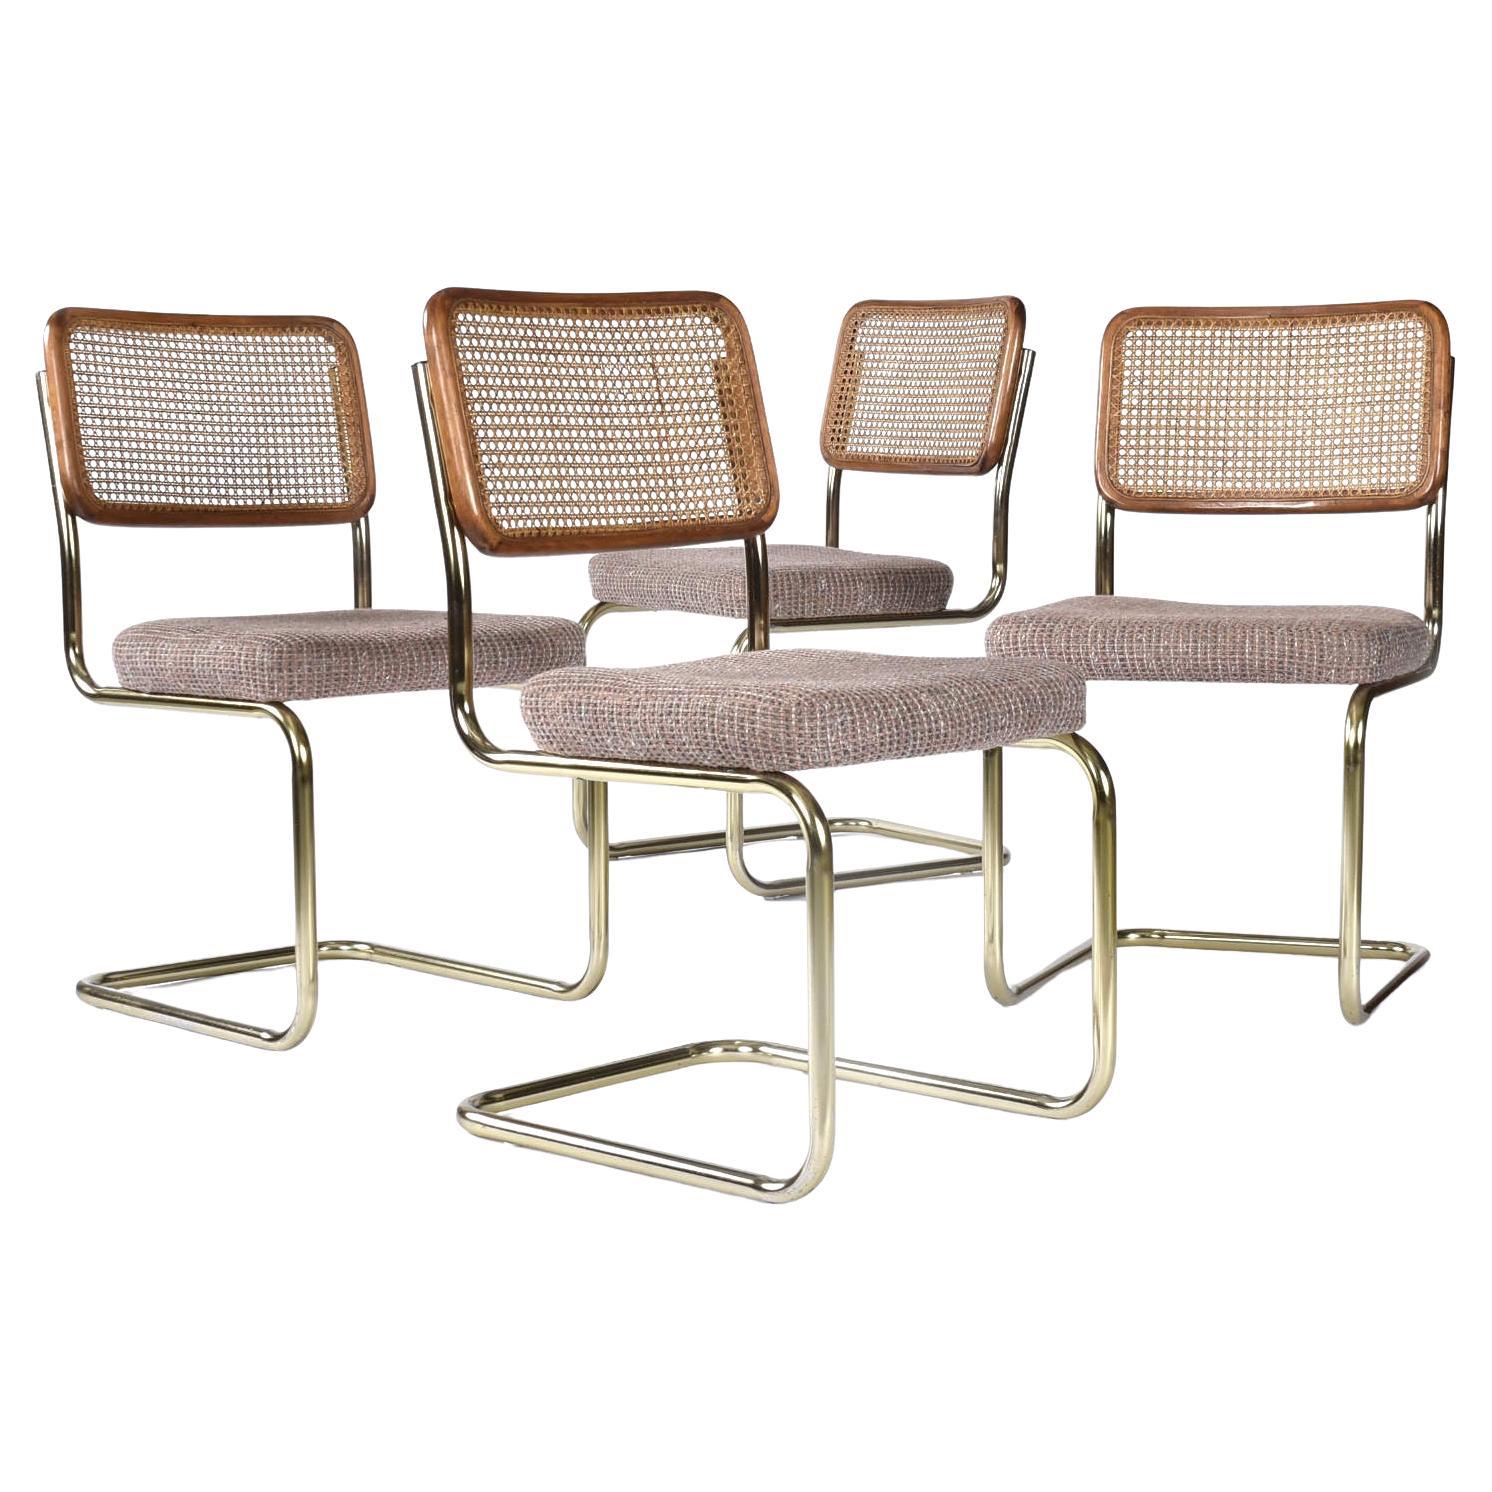 Vier Vintage-Stühle aus Rohrgeflecht im Cesca-Stil mit Mauve-Polsterungen und Sitzen